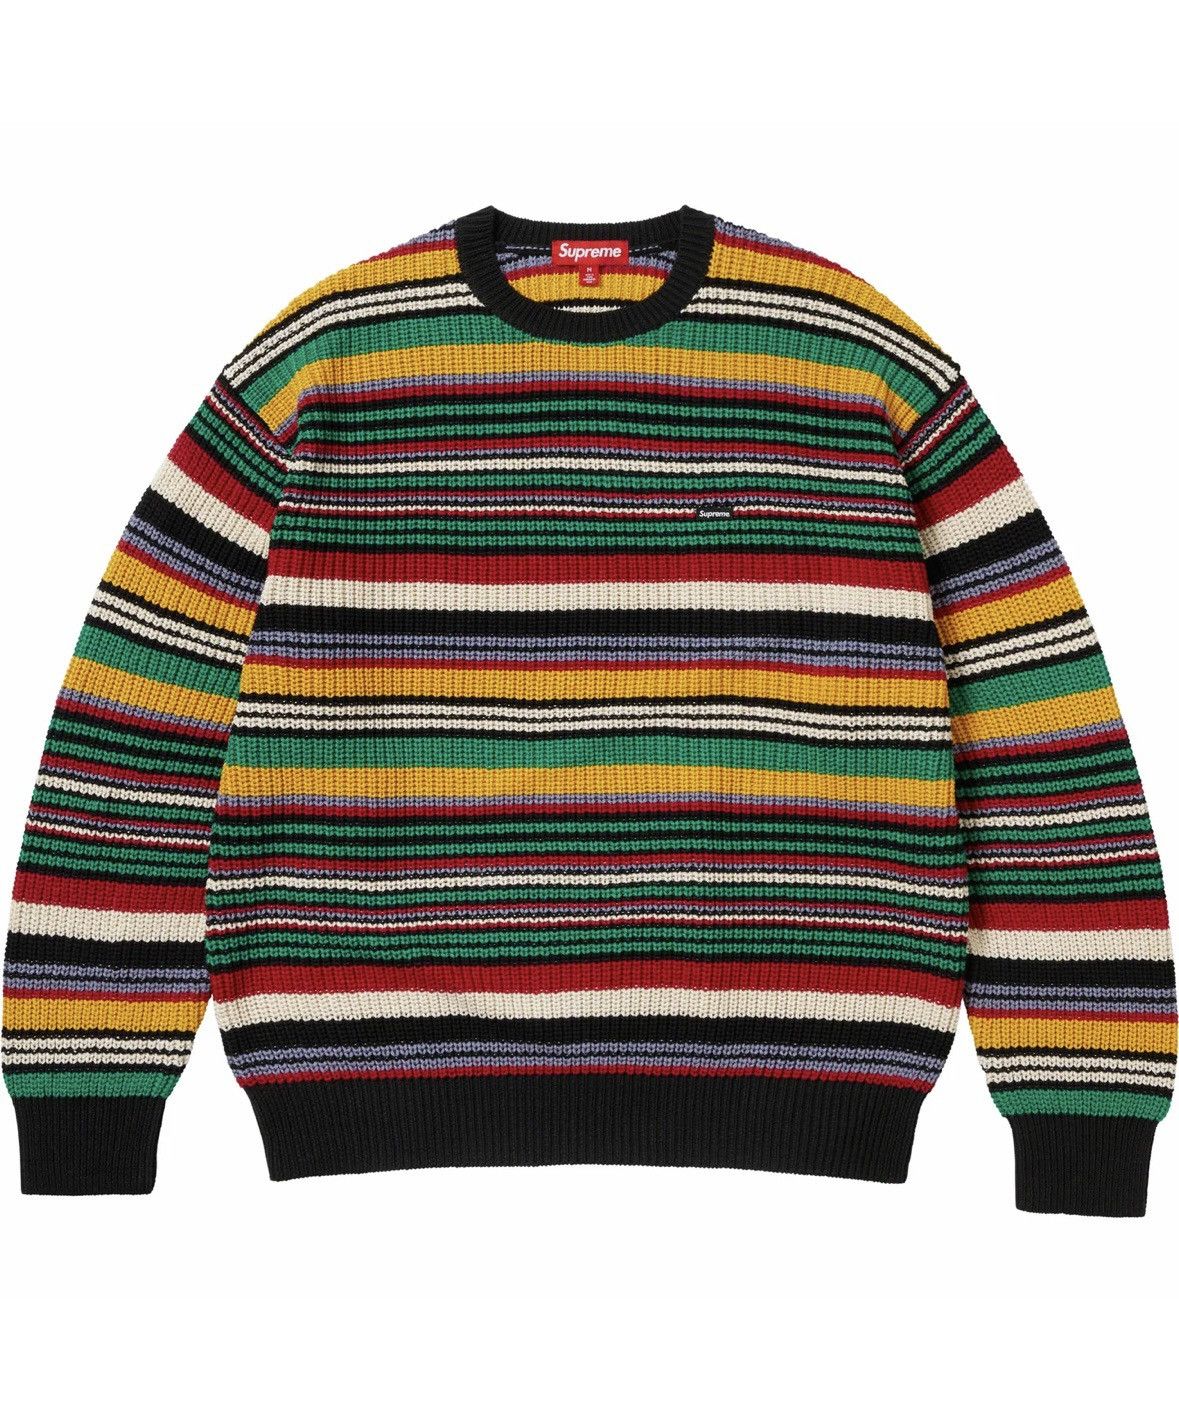 Supreme Supreme Small Box Ribbed Sweater | Grailed